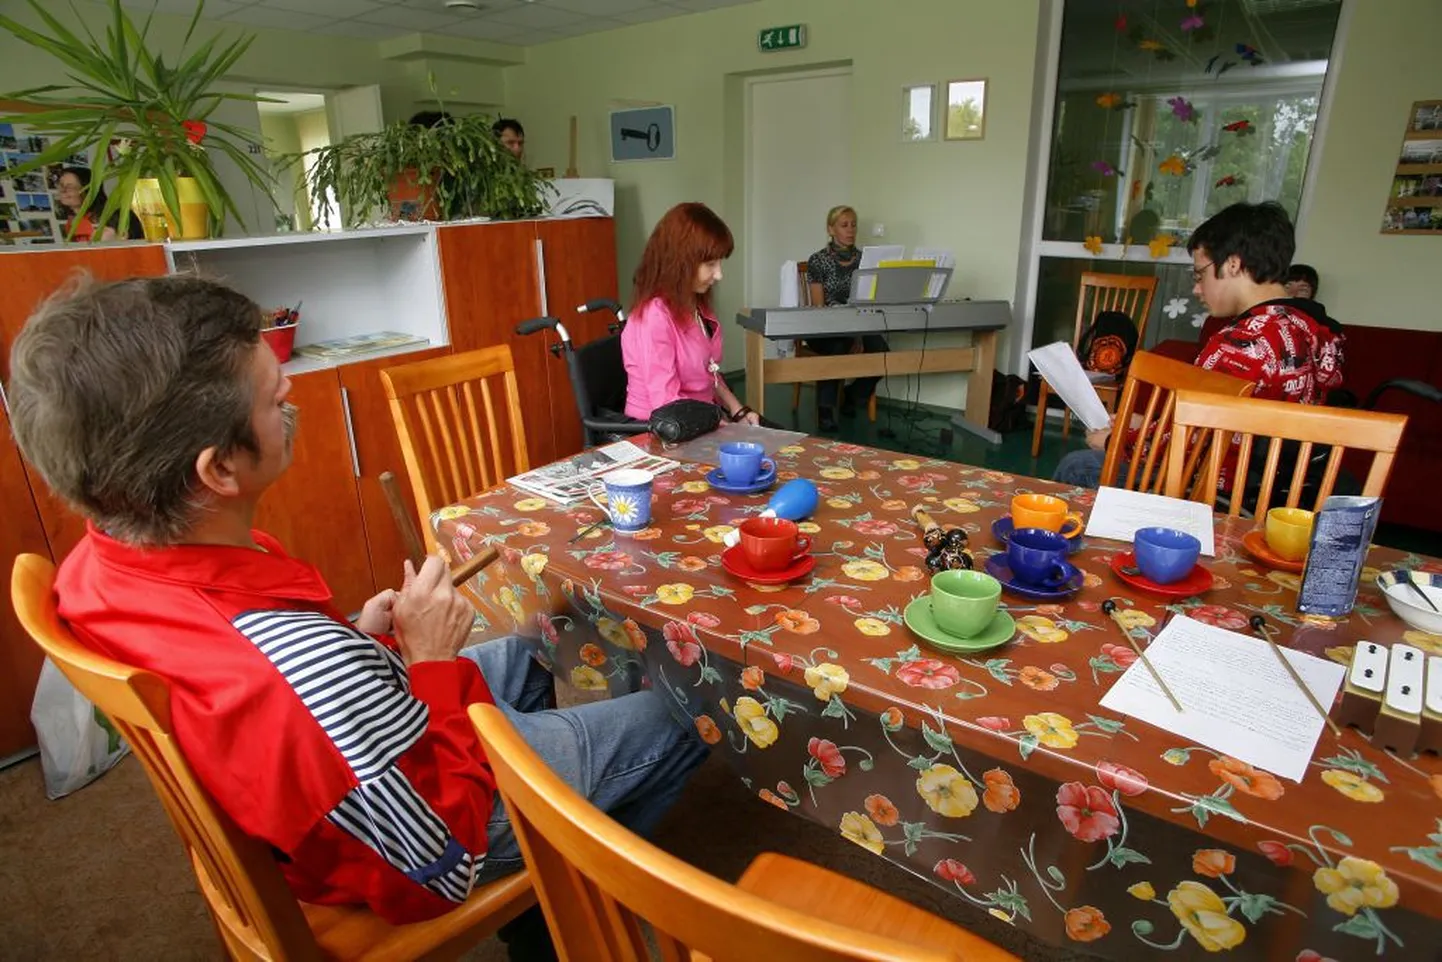 Füüsilise ja muu puudega inimestel on päevakeskuses regilauluring, alati on kaetud laud mõnusaks kohvipausiks.